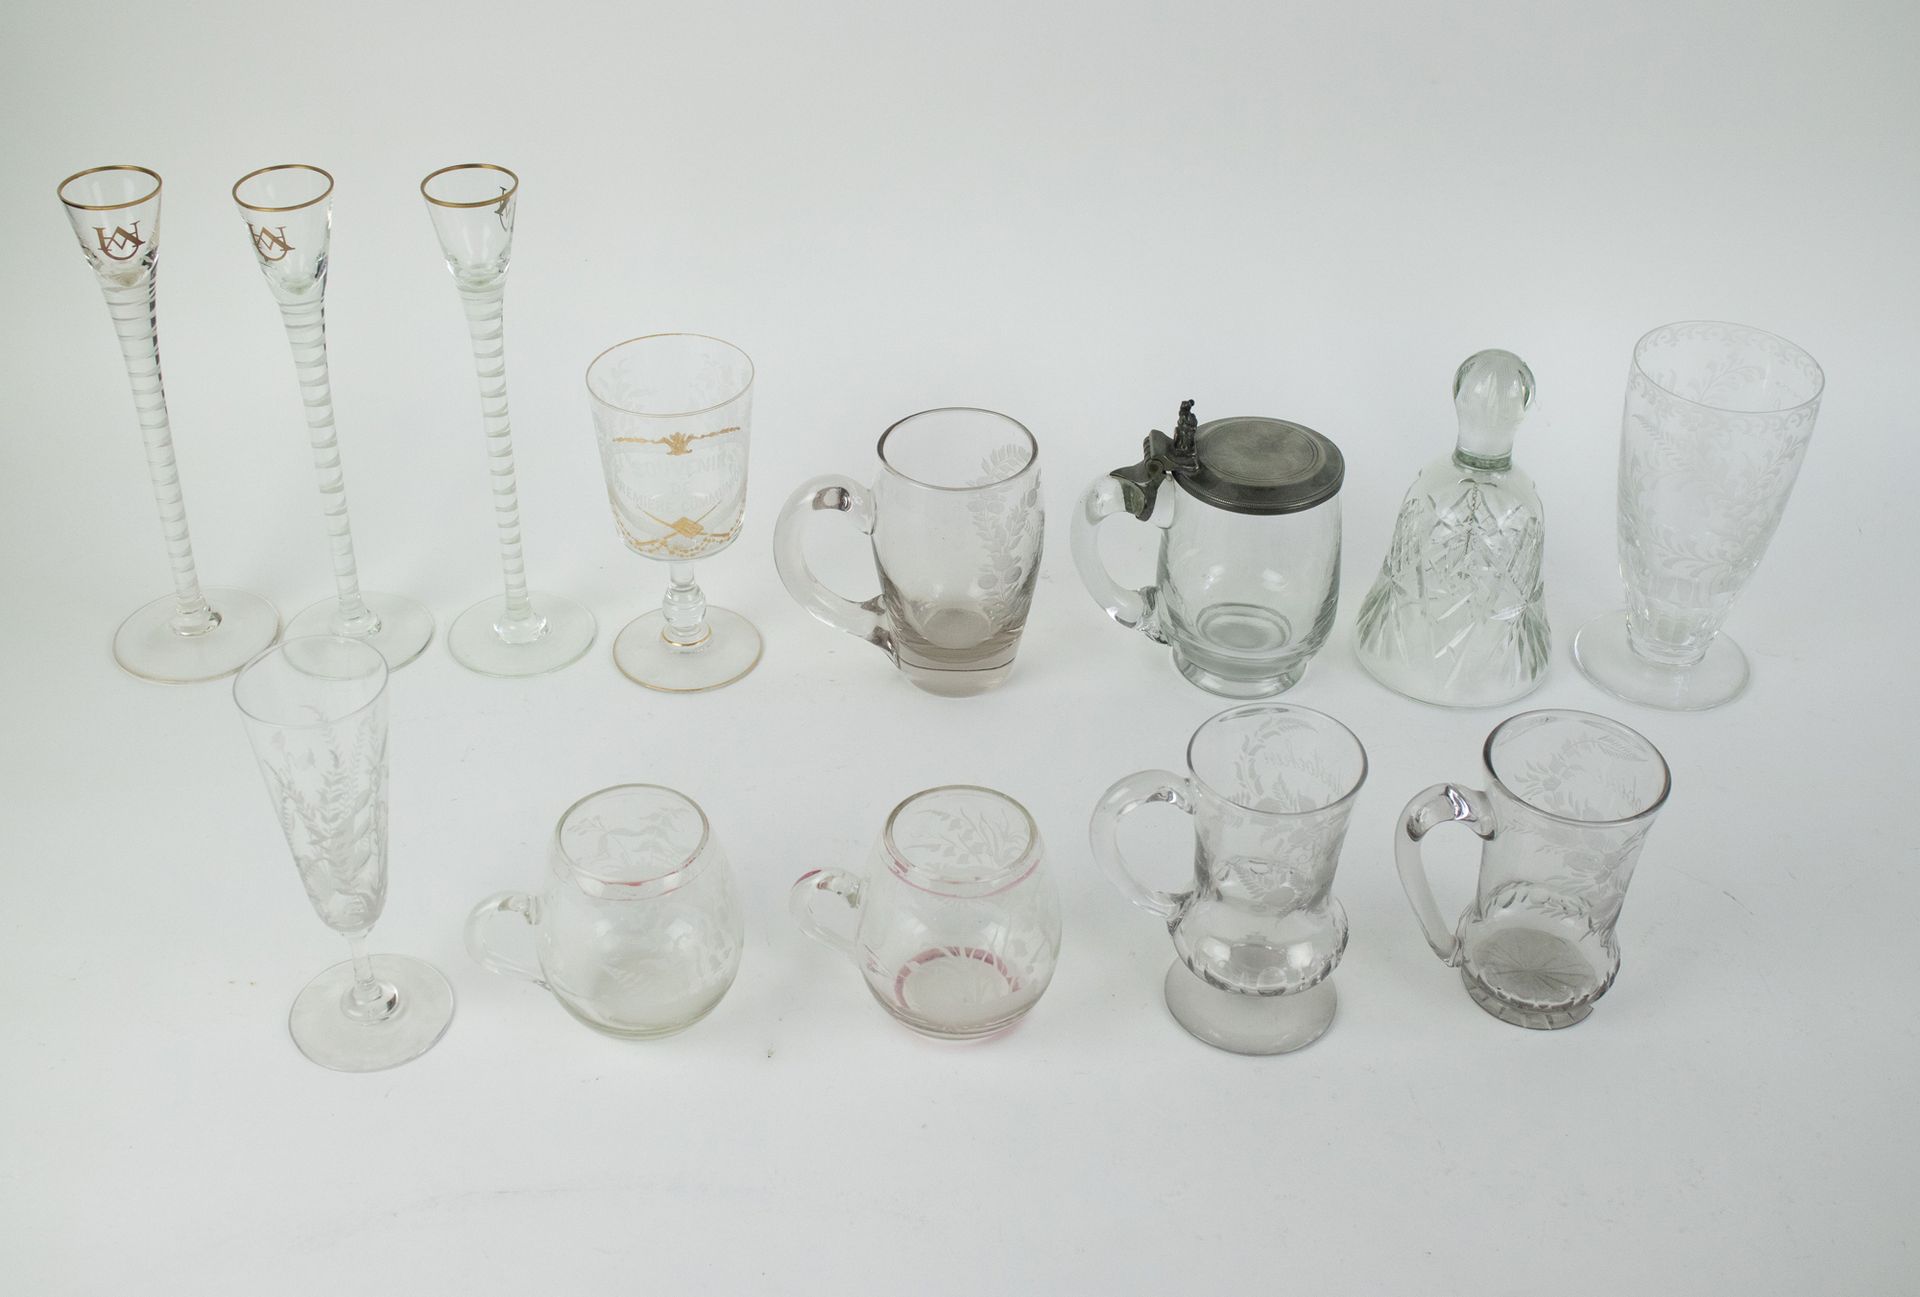 Null 旧玻璃器皿的收藏
旧玻璃器皿的收藏和一个台钟。Een verzameling van oud glaswerk en een tafelklok.